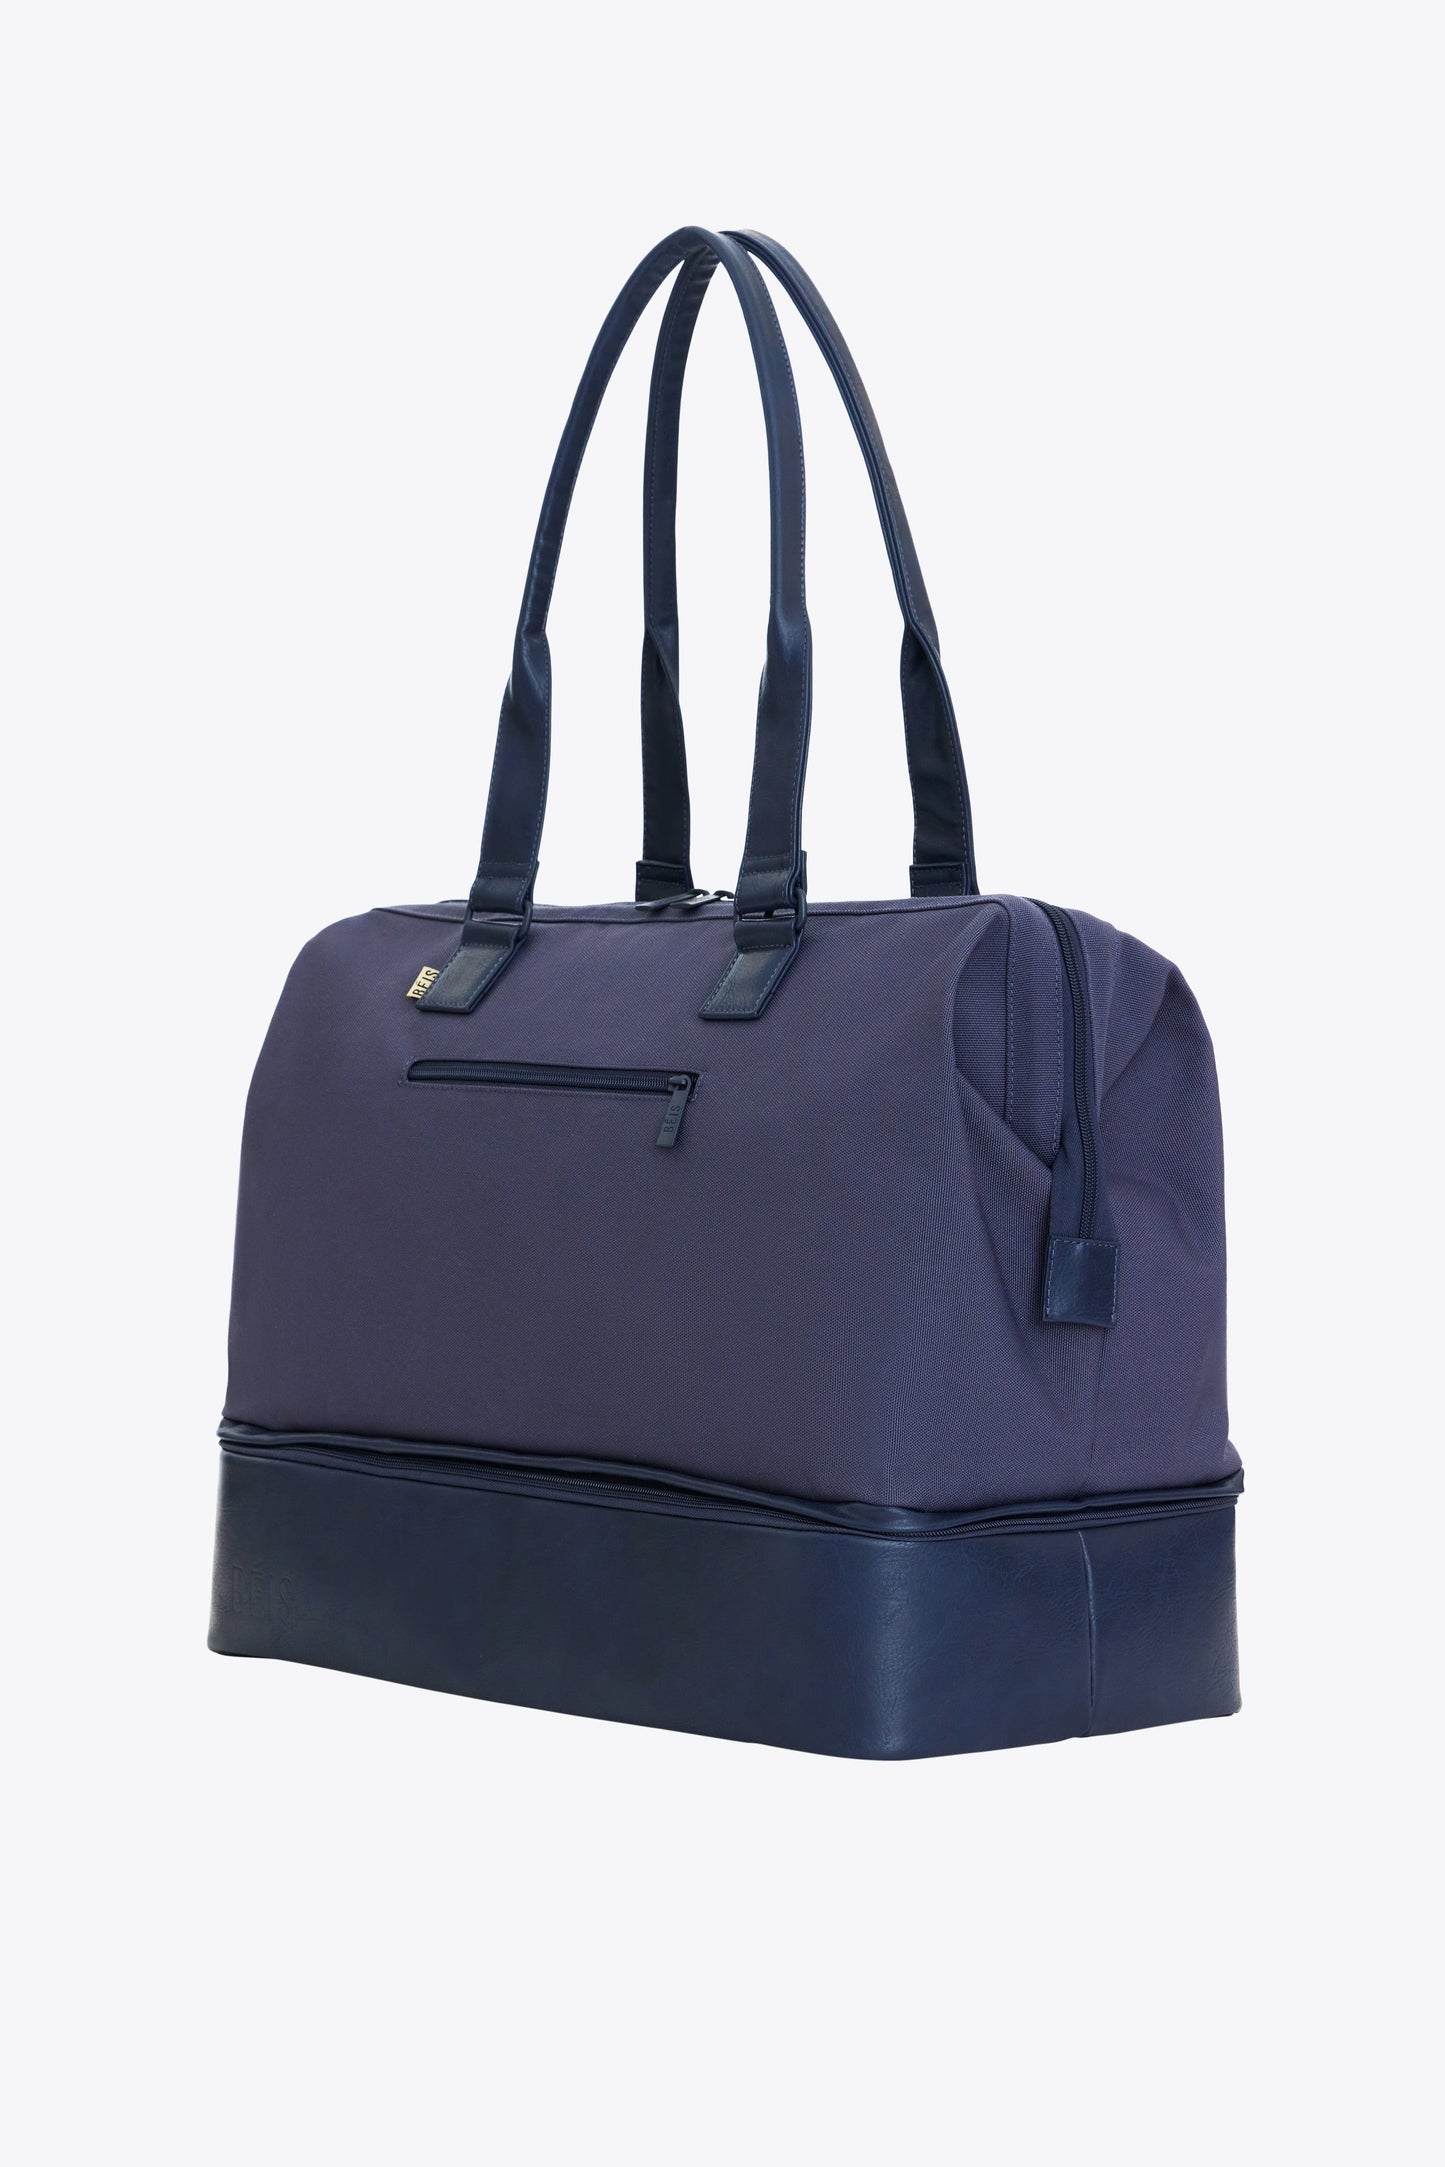 Bagsmart Weekender Overnight Bag - Navy Blue – Modern Quests